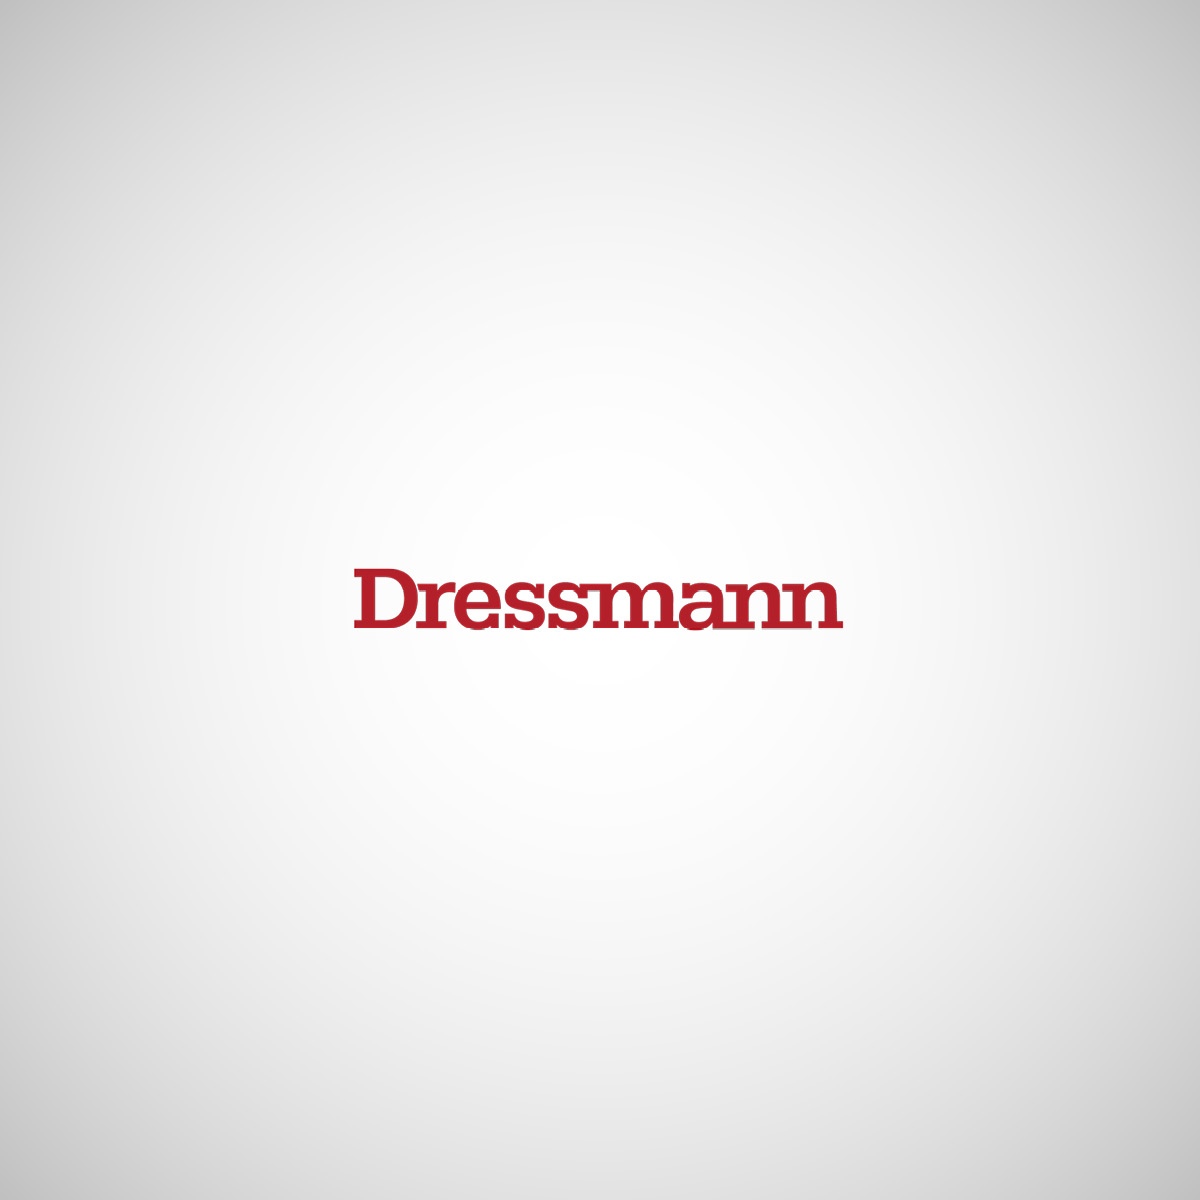 Dressmann_1200x1200_2023-05-02-125213_utvd.jpg